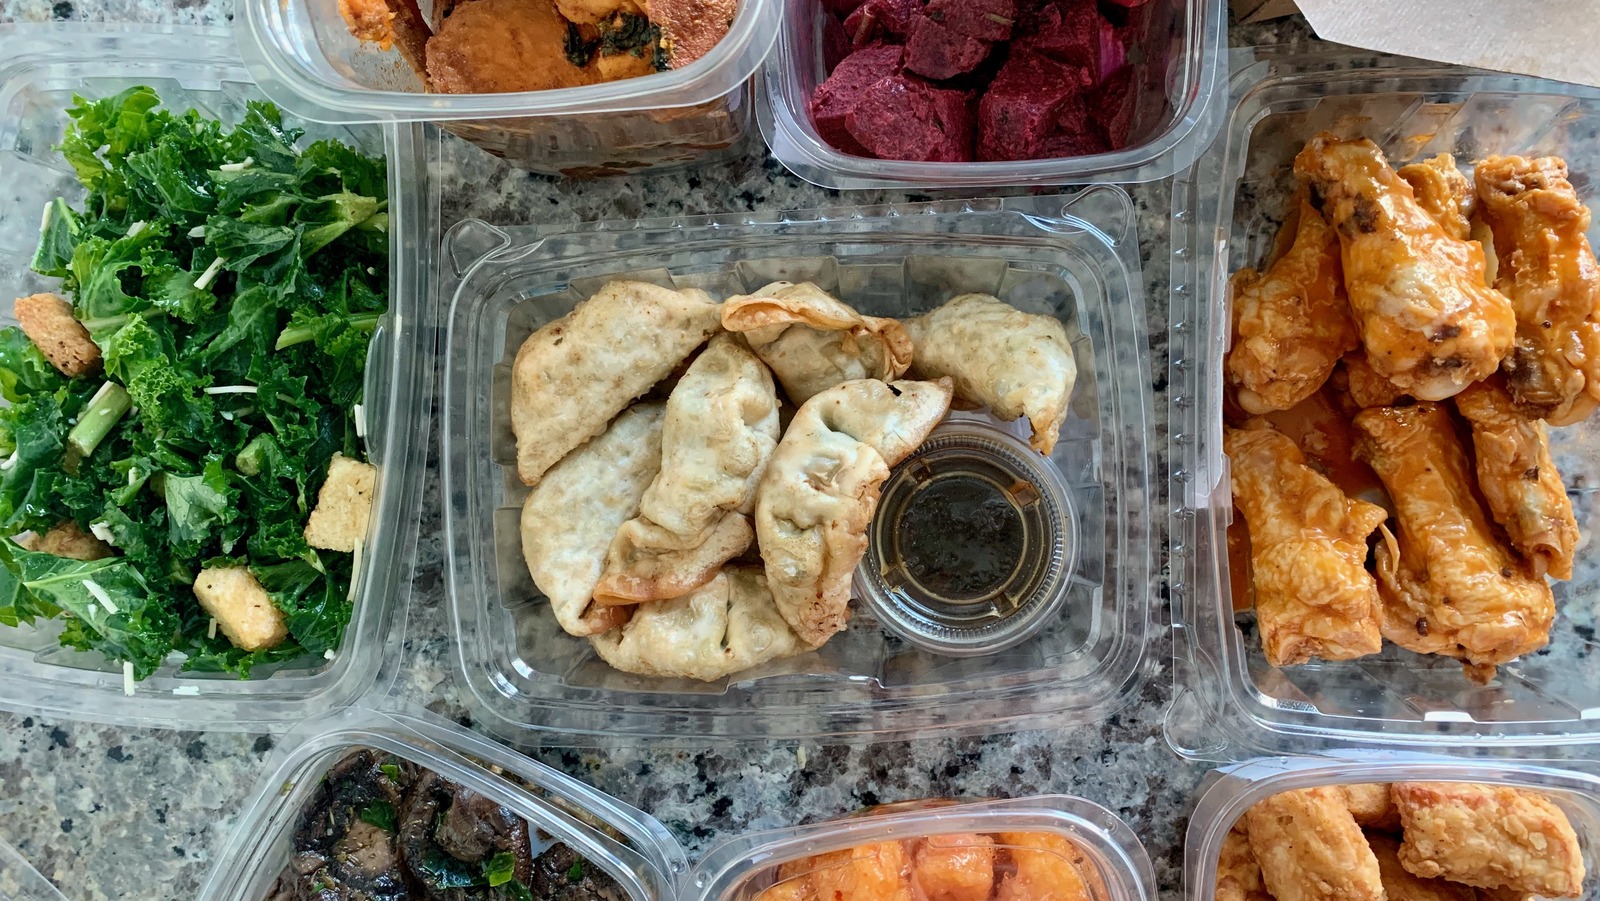 Prepack Cold Salad, 10 oz at Whole Foods Market